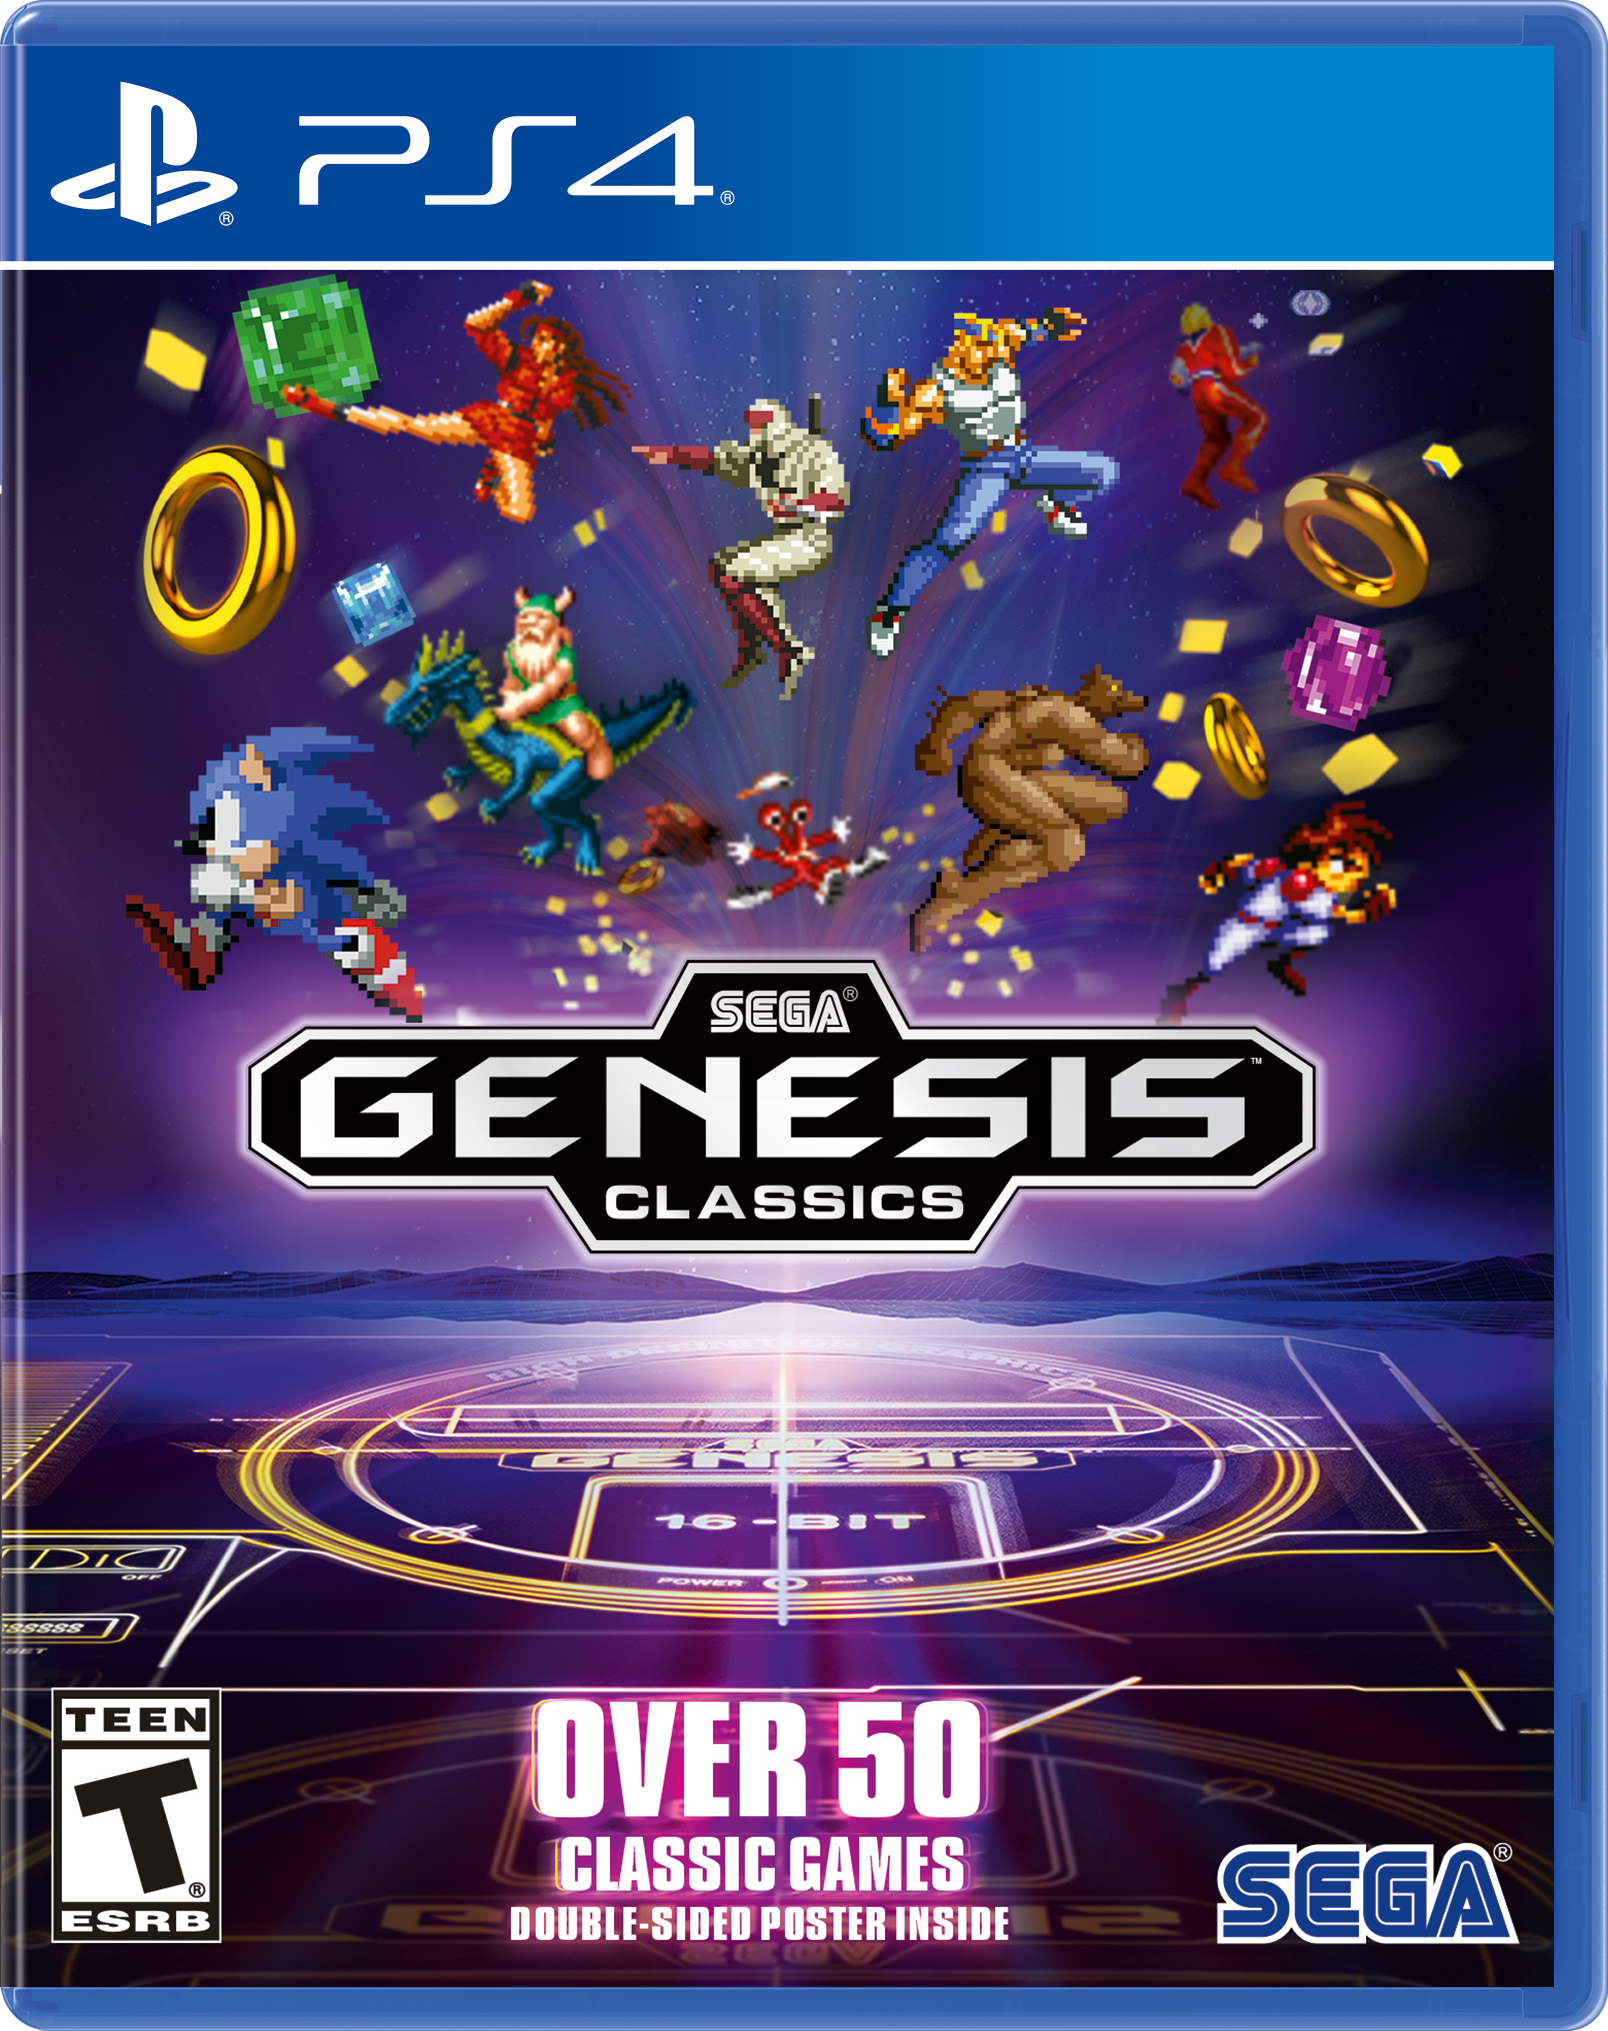 sega genesis classics games download free